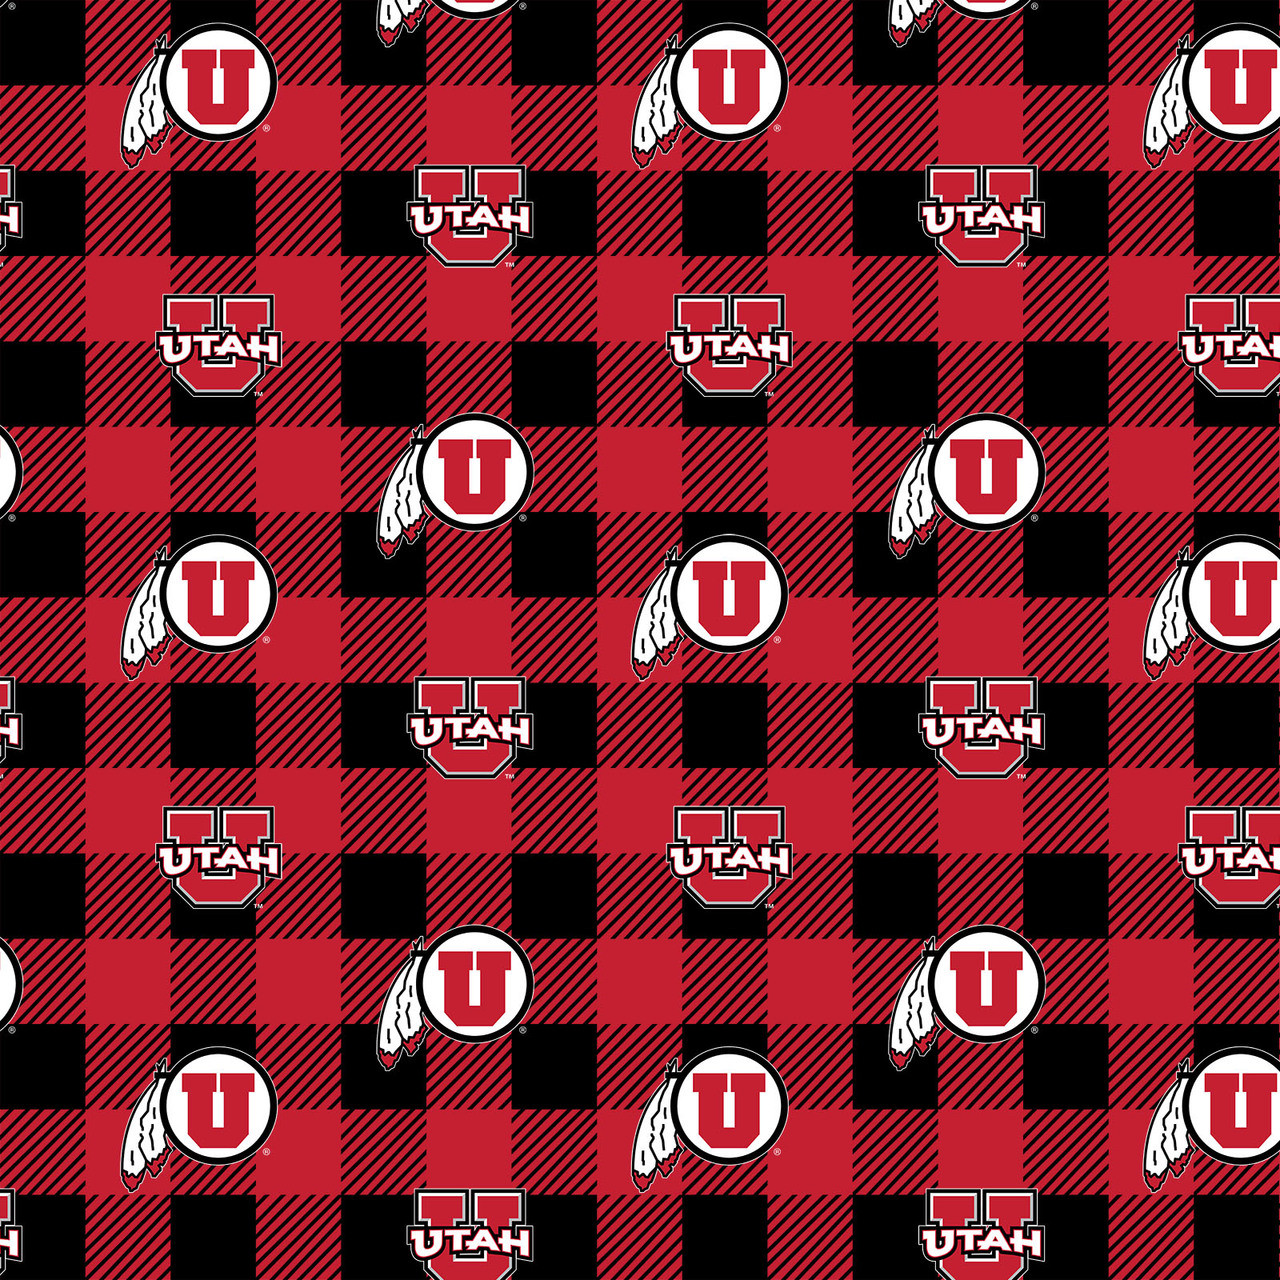 Utah Utah-1190 Buffalo Plaid Fleece, Size: 58, Other